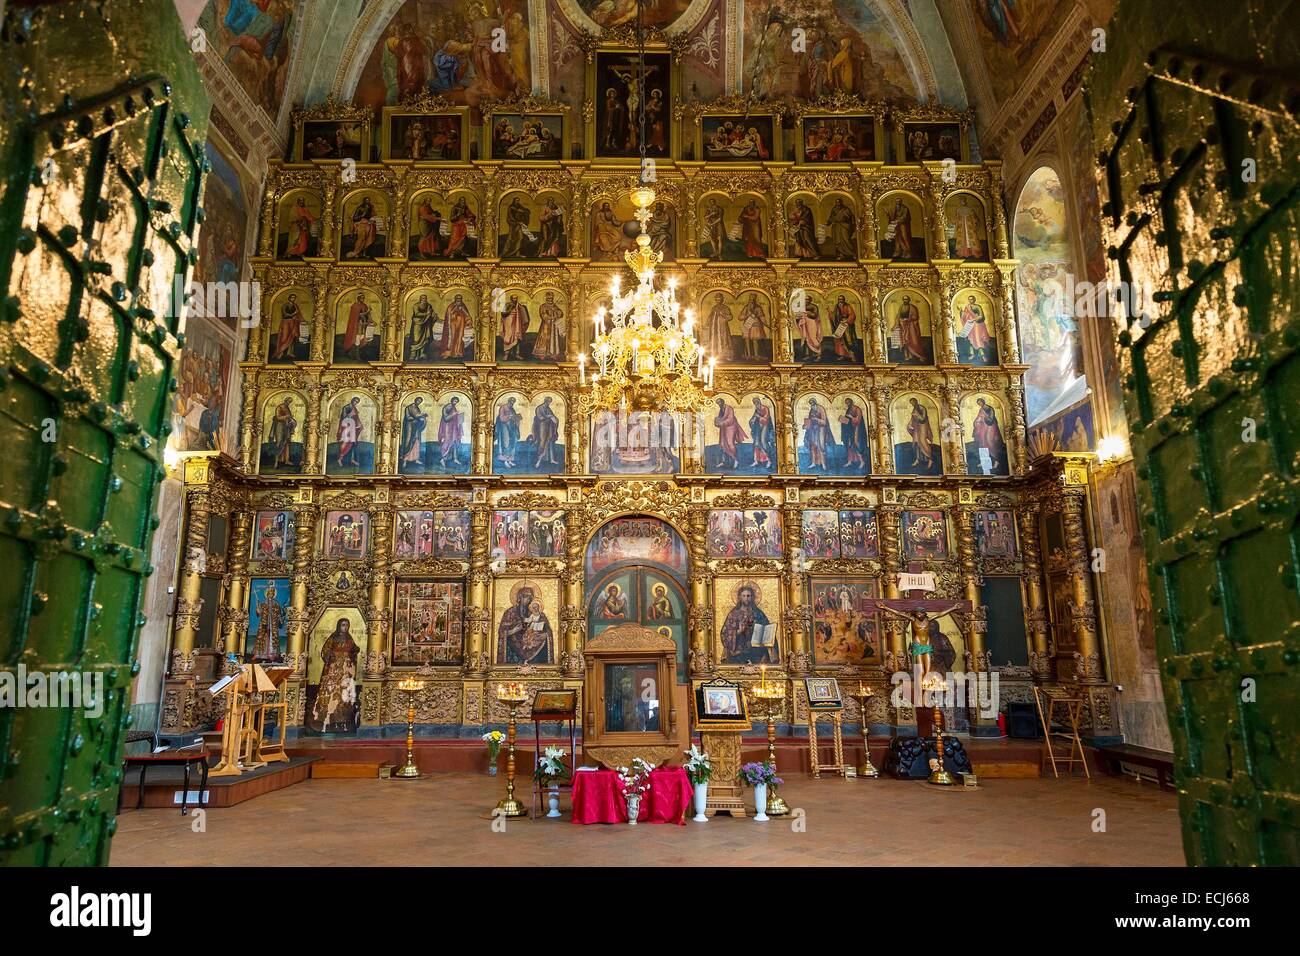 La Russie, l'anneau d'or, Cathédrale de la Transfiguration, Uglich Banque D'Images